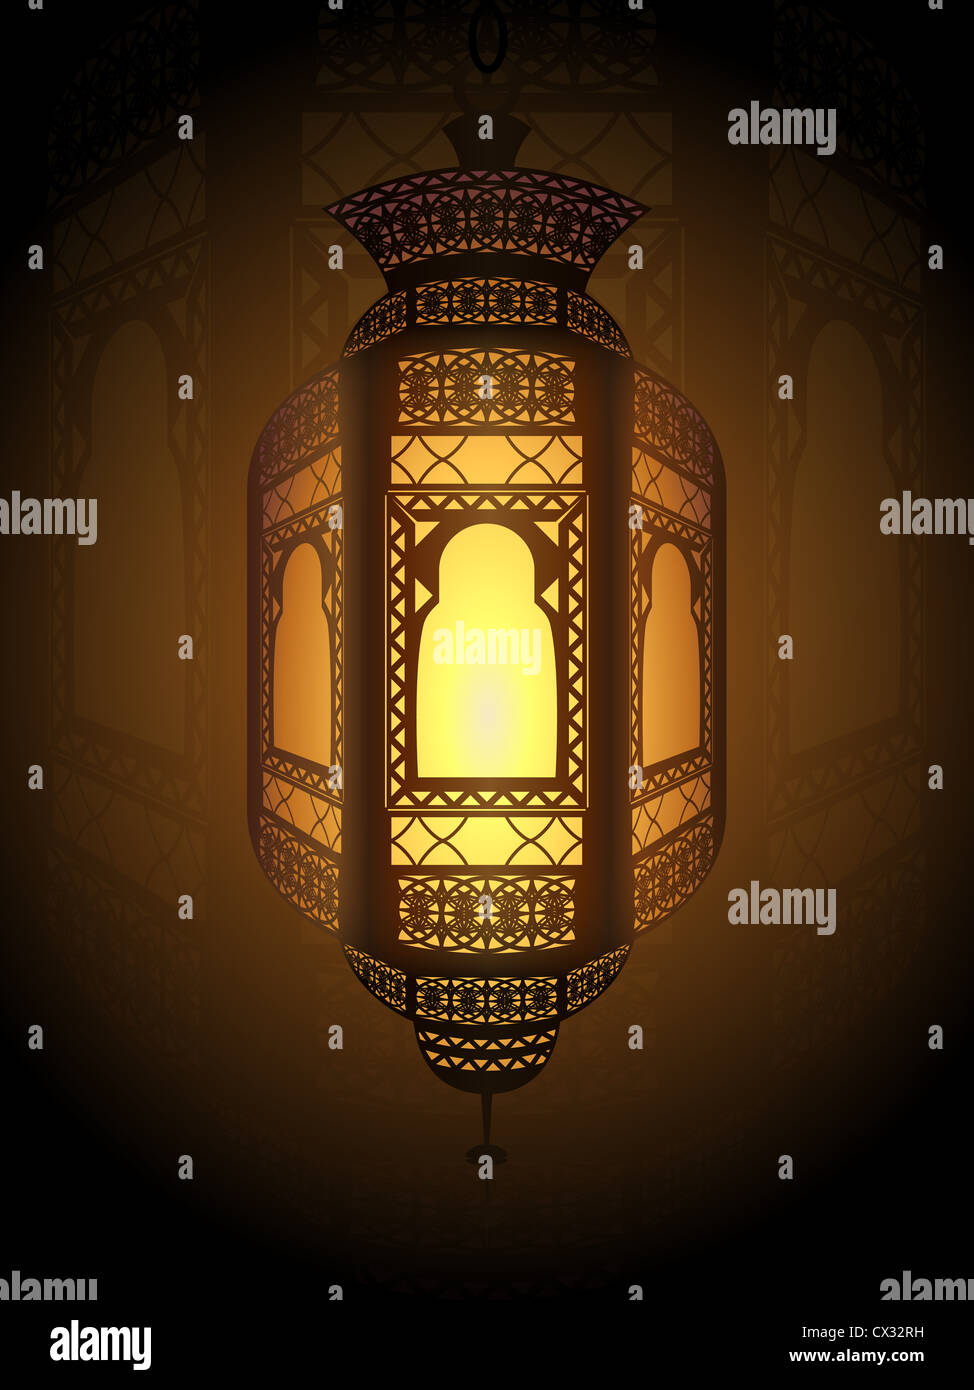 Illustration de fanoos (lanterne) utilisés comme ornements religieux pour la décoration et la célébration dans le mois sacré du Ramadan. Banque D'Images